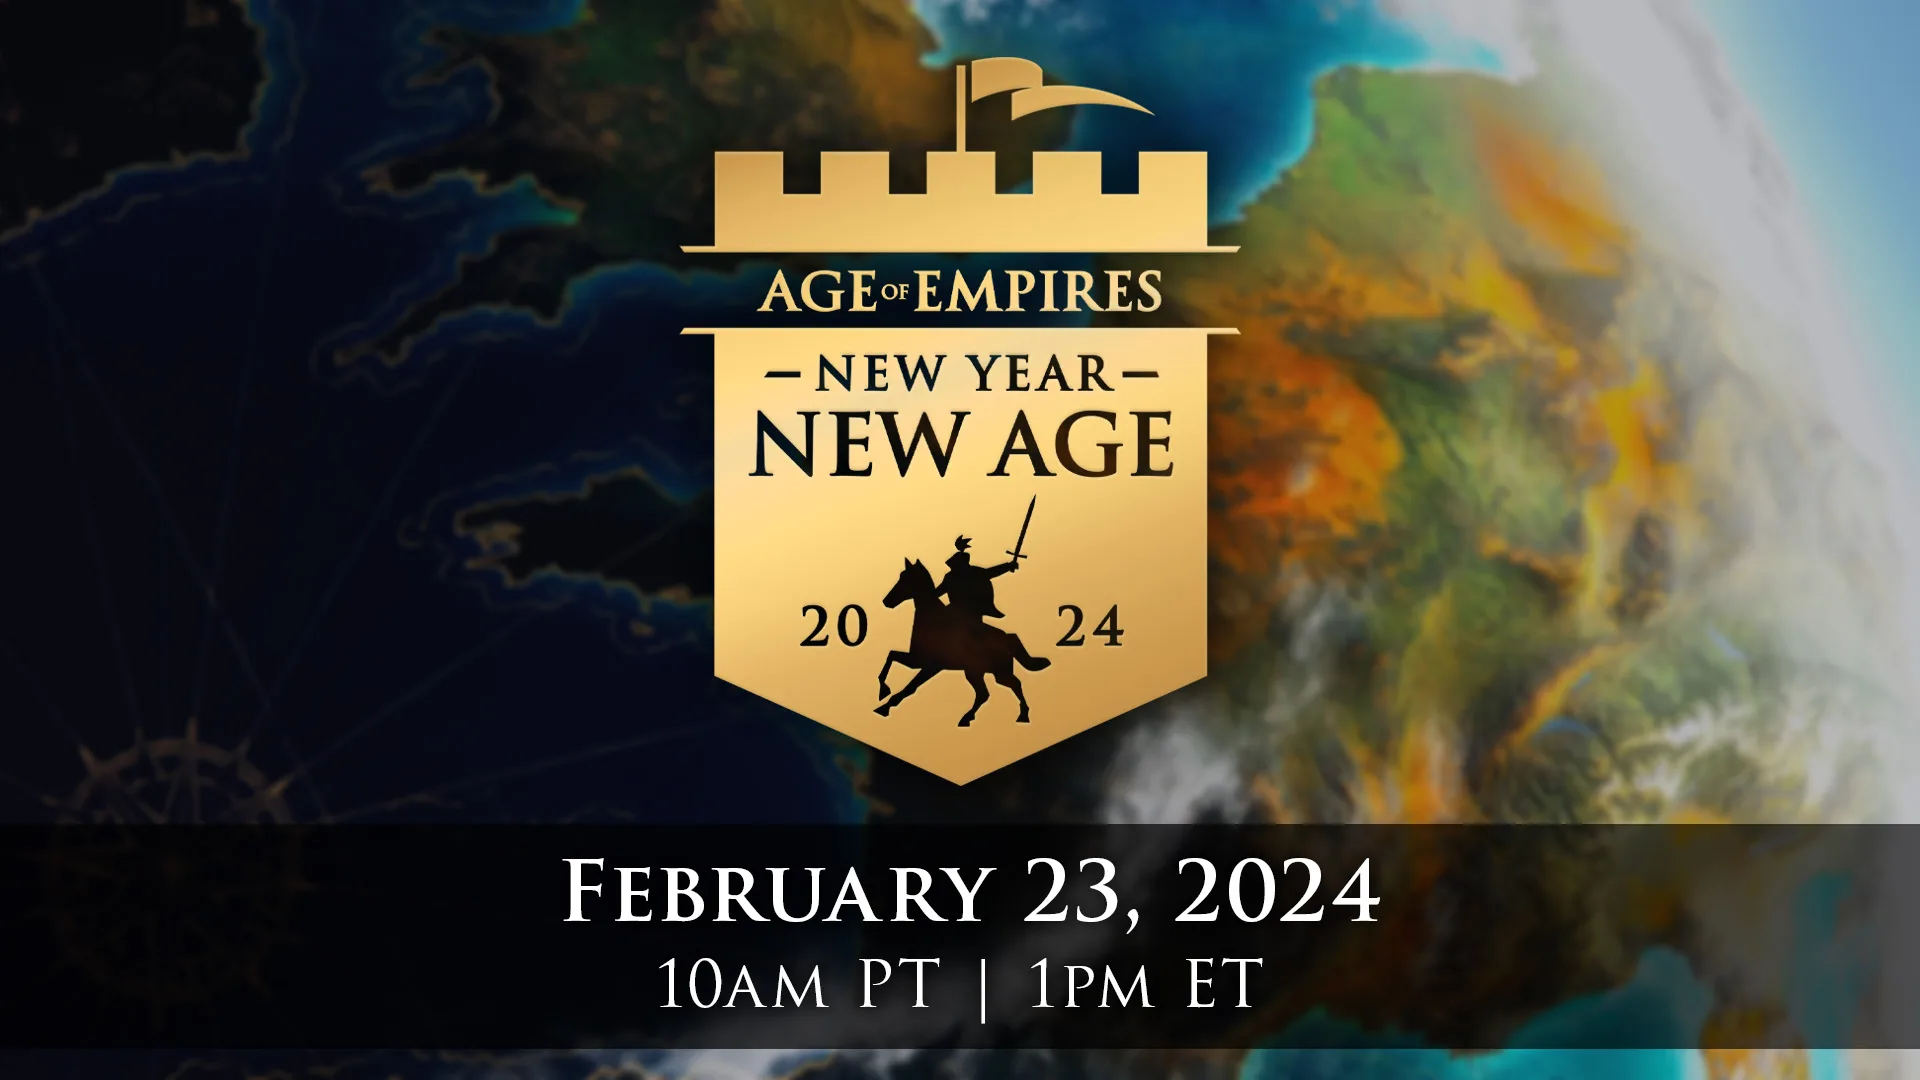 Evento de “Age of Empires” Marcado para 23 de Fevereiro Destaca Novos Jogos da Franquia